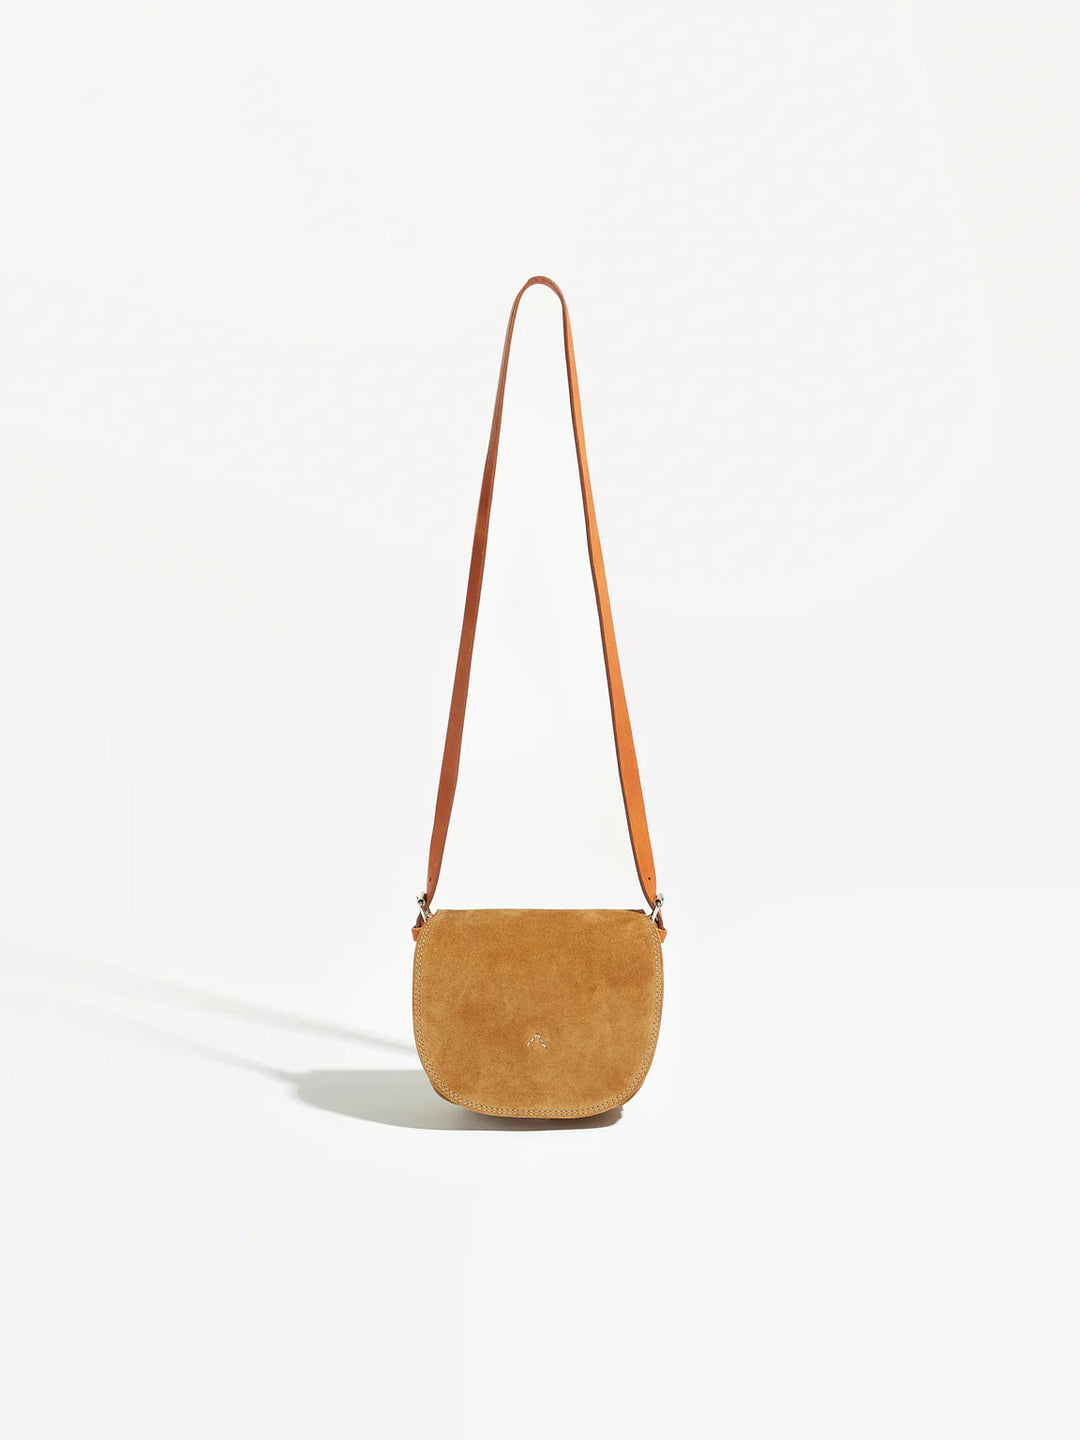 Bellerose – Stella Bag in Camel